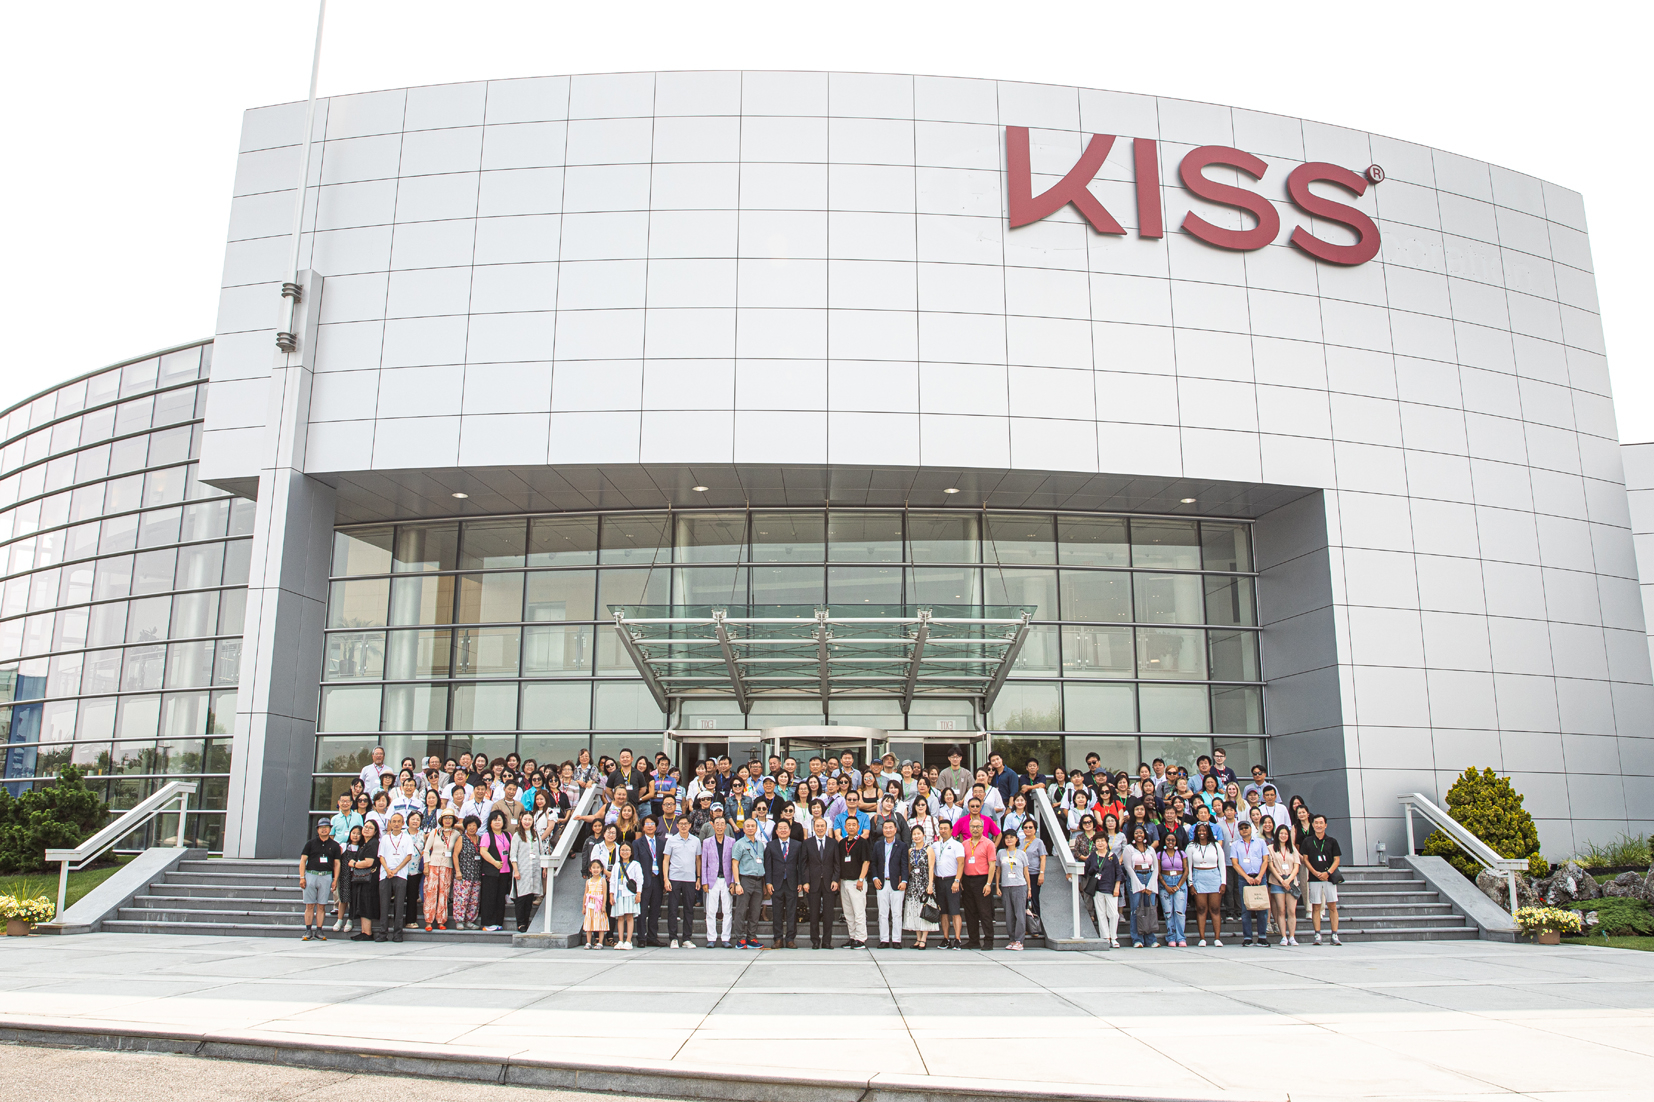 KISS 그룹은 미 전역의 뷰티 서플라이 관계자 250명을 초청해 '2023 KISS 방문의 날' 행사를 성공리에 개최했다. 참가자들이 KISS 그룹 사옥에서 기념촬영을 하고 있다. [사진 KISS 그룹]